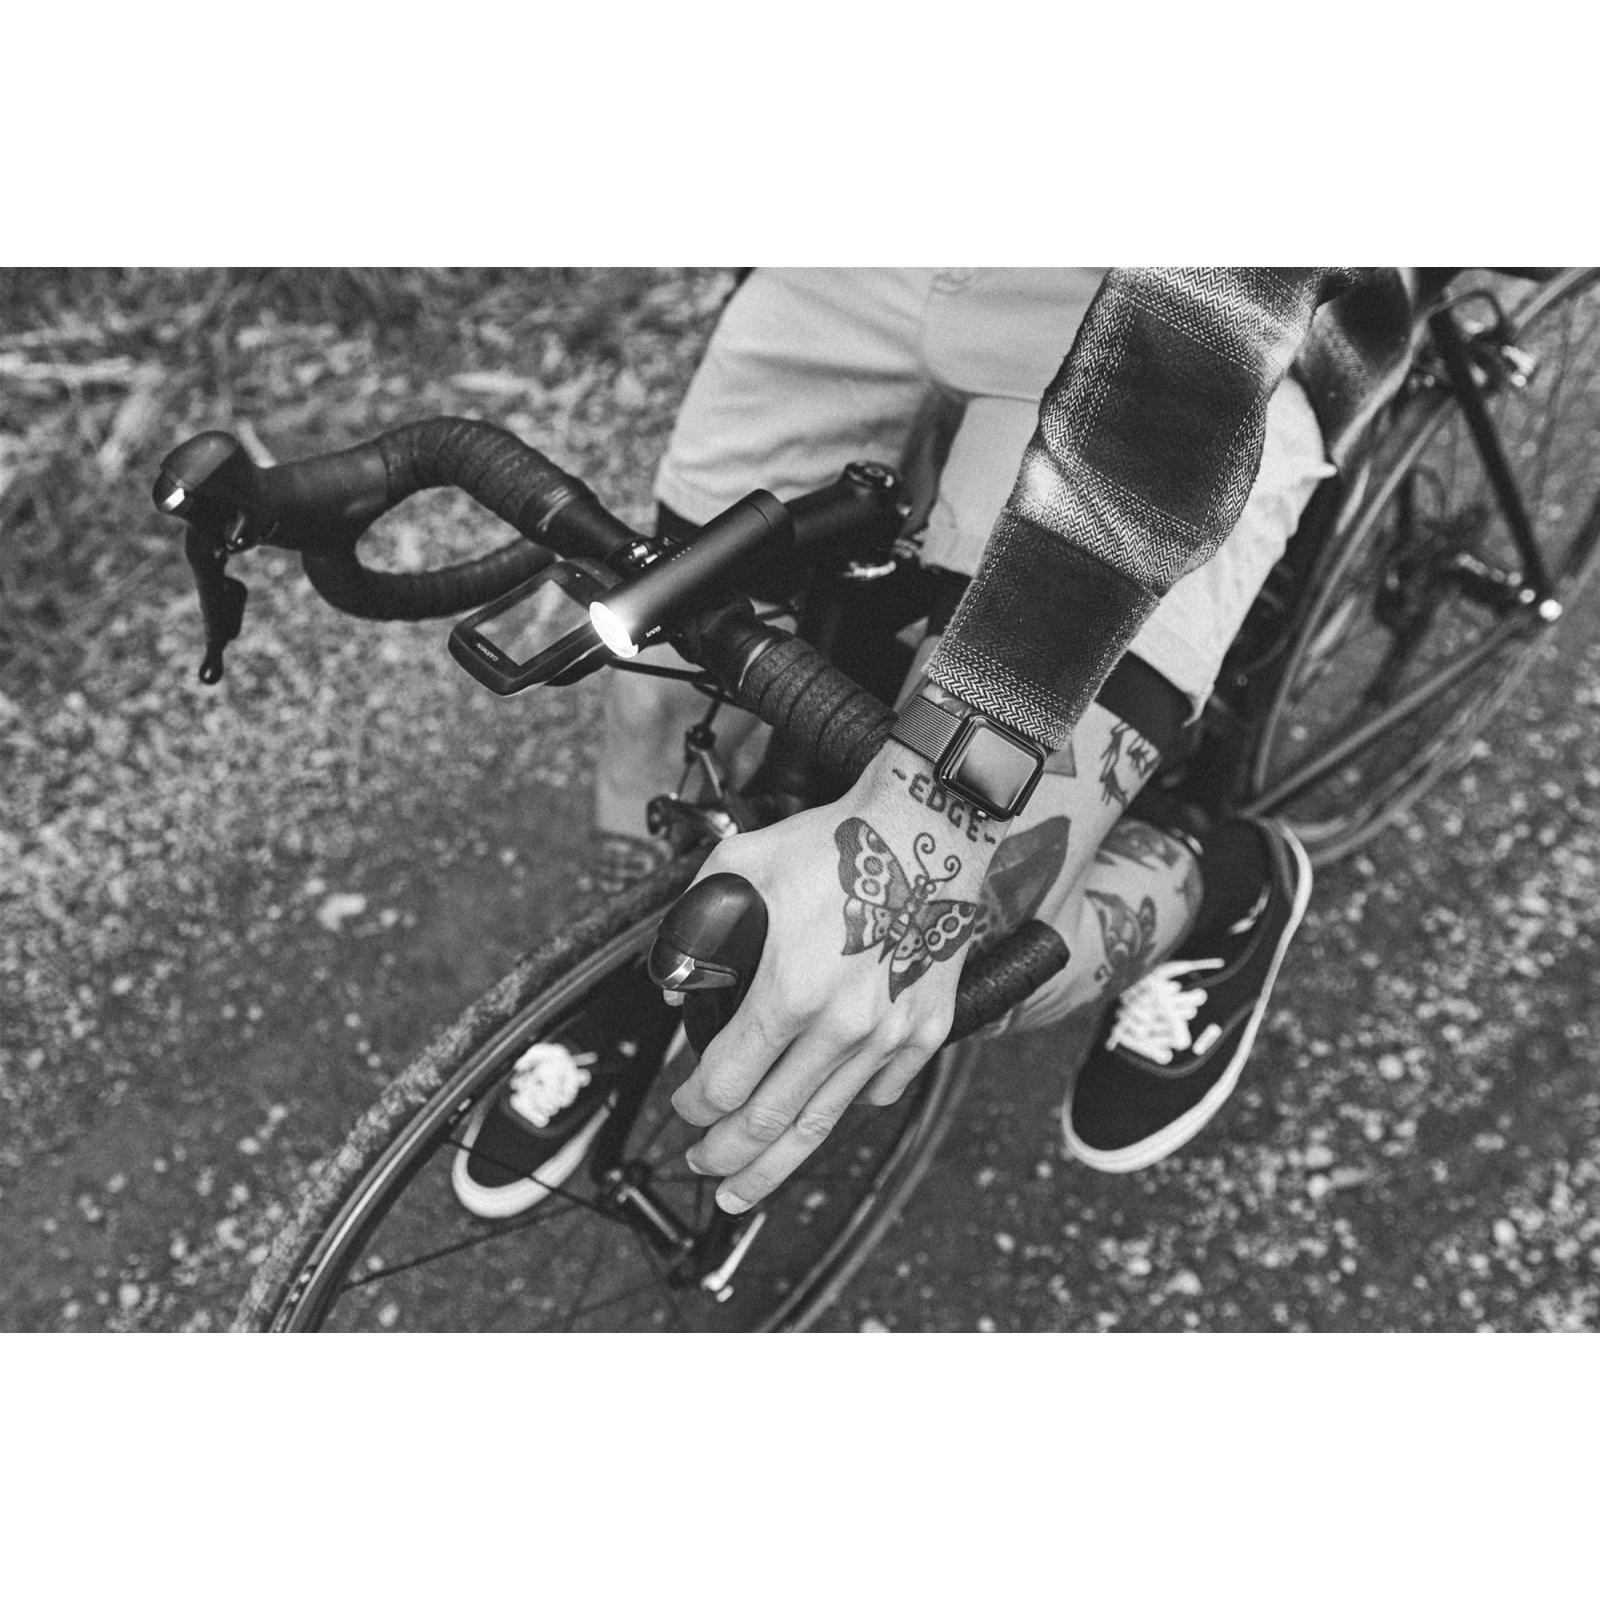 Передняя велофара Knog PWR Rider 450 Lumens (12057) изображение 7